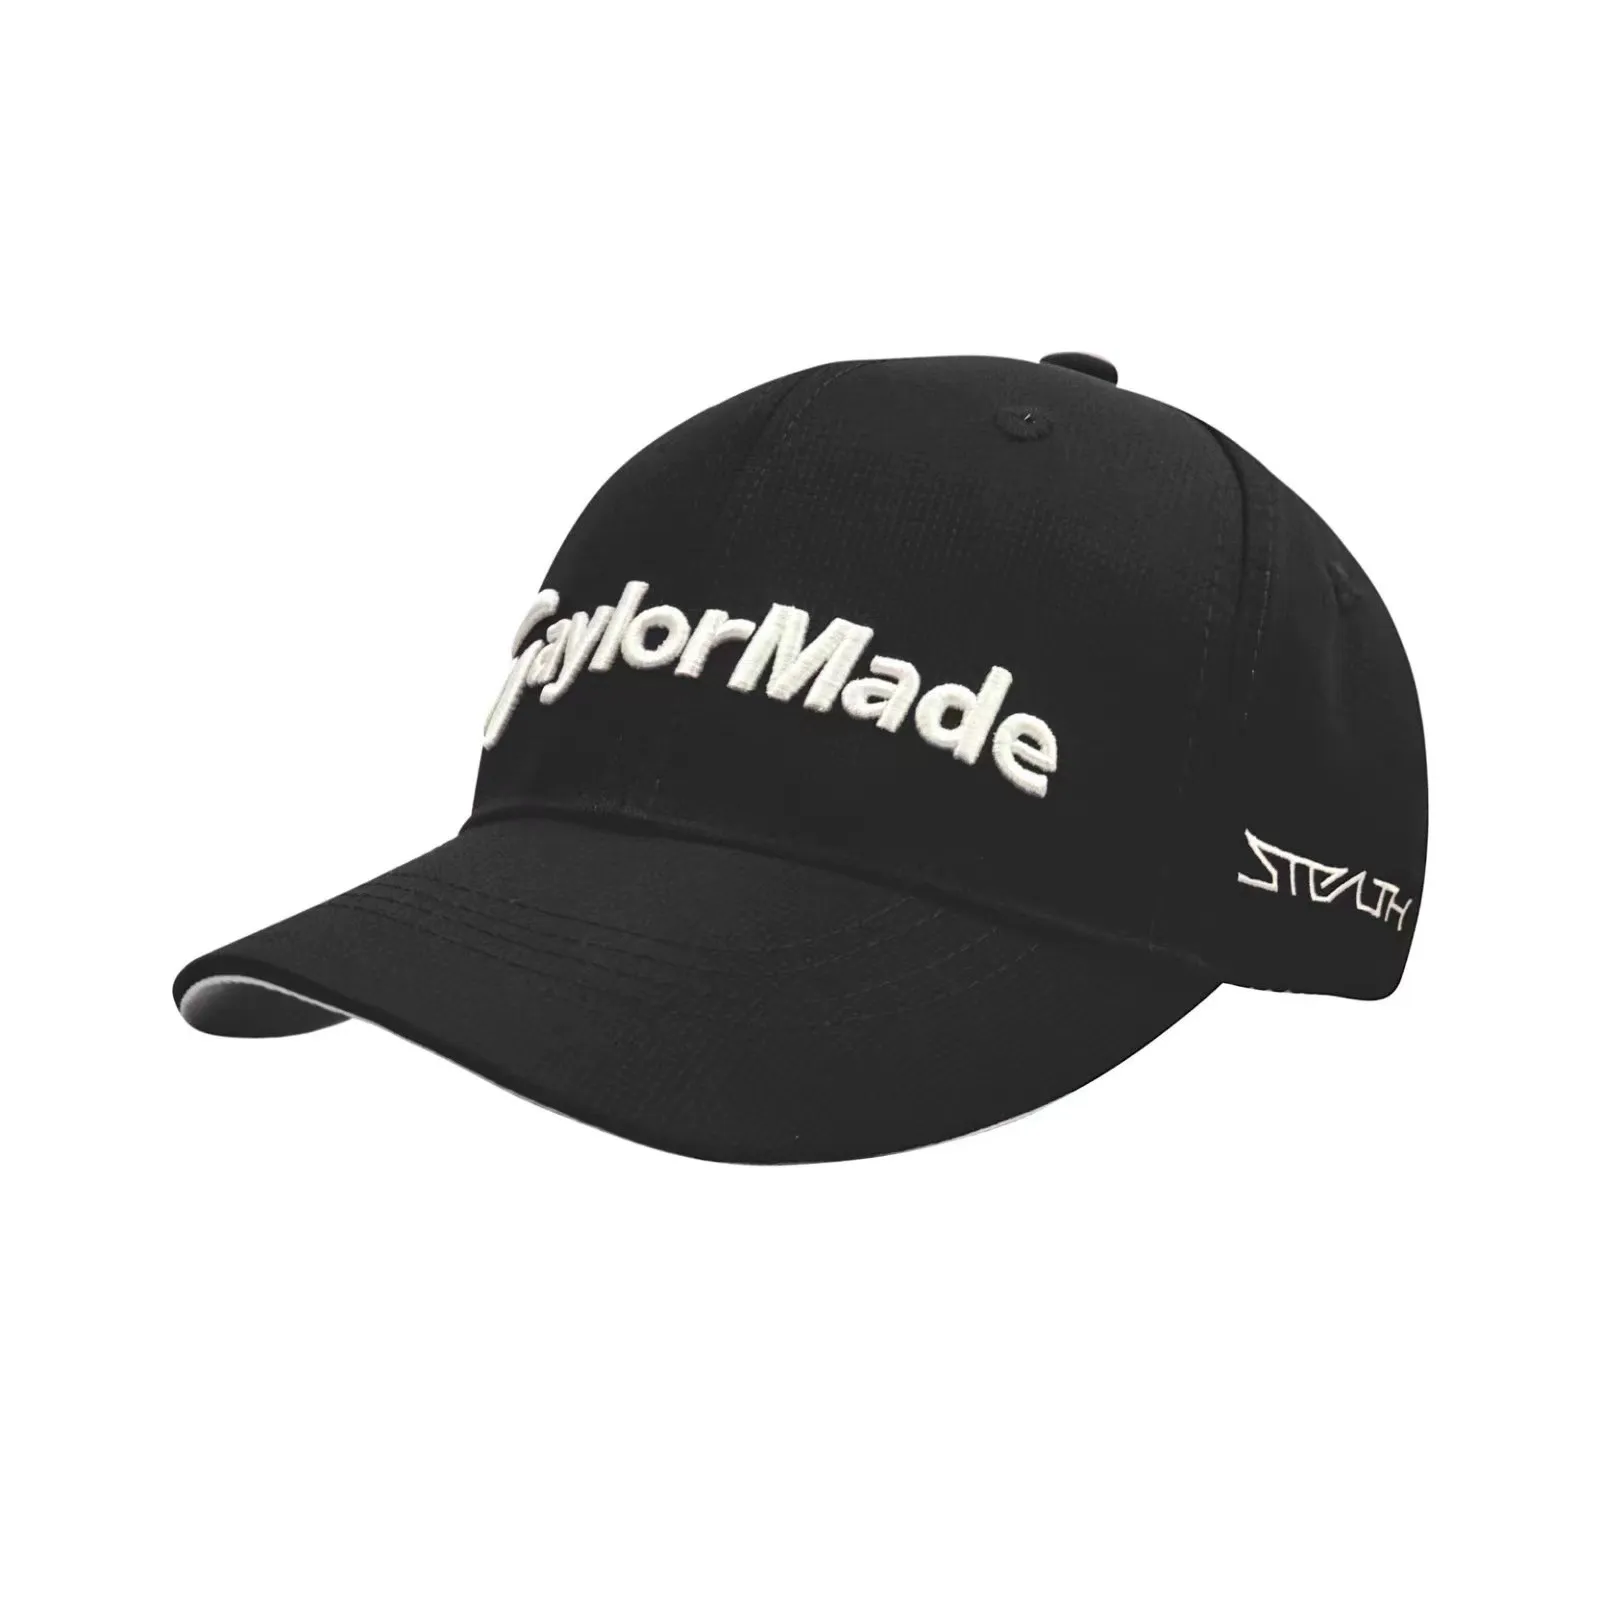 Snapbacks 4692High Quality Mens Color Golf Visor Snapback Hats Pupar Sport Flat Printed Brim Fans One Size Adjustable Drop Delivery Sp Otnch